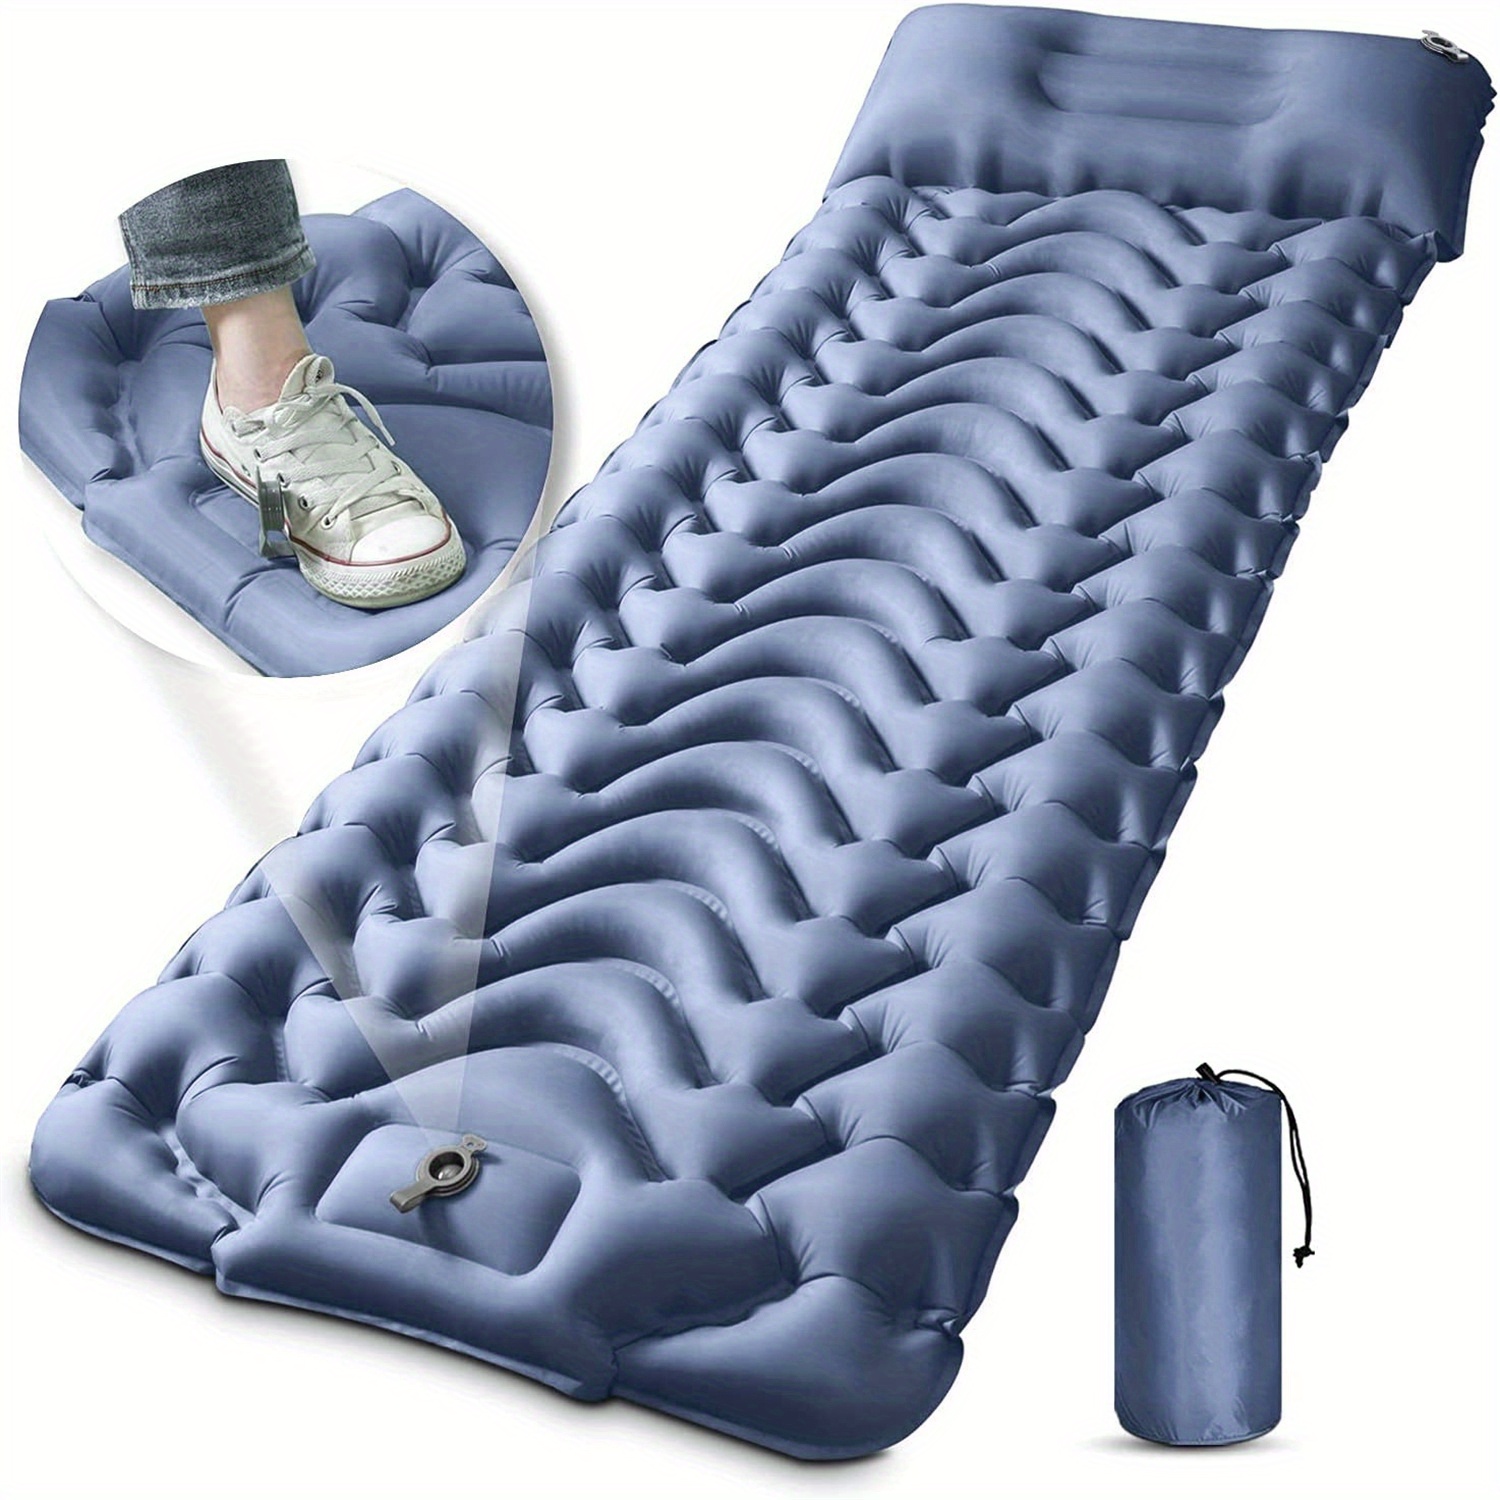 Colchoneta de dormir para camping, 4.7 pulgadas de grosor extra, colchoneta  inflable compacta con bomba integrada, alfombrilla de dormir súper cómoda